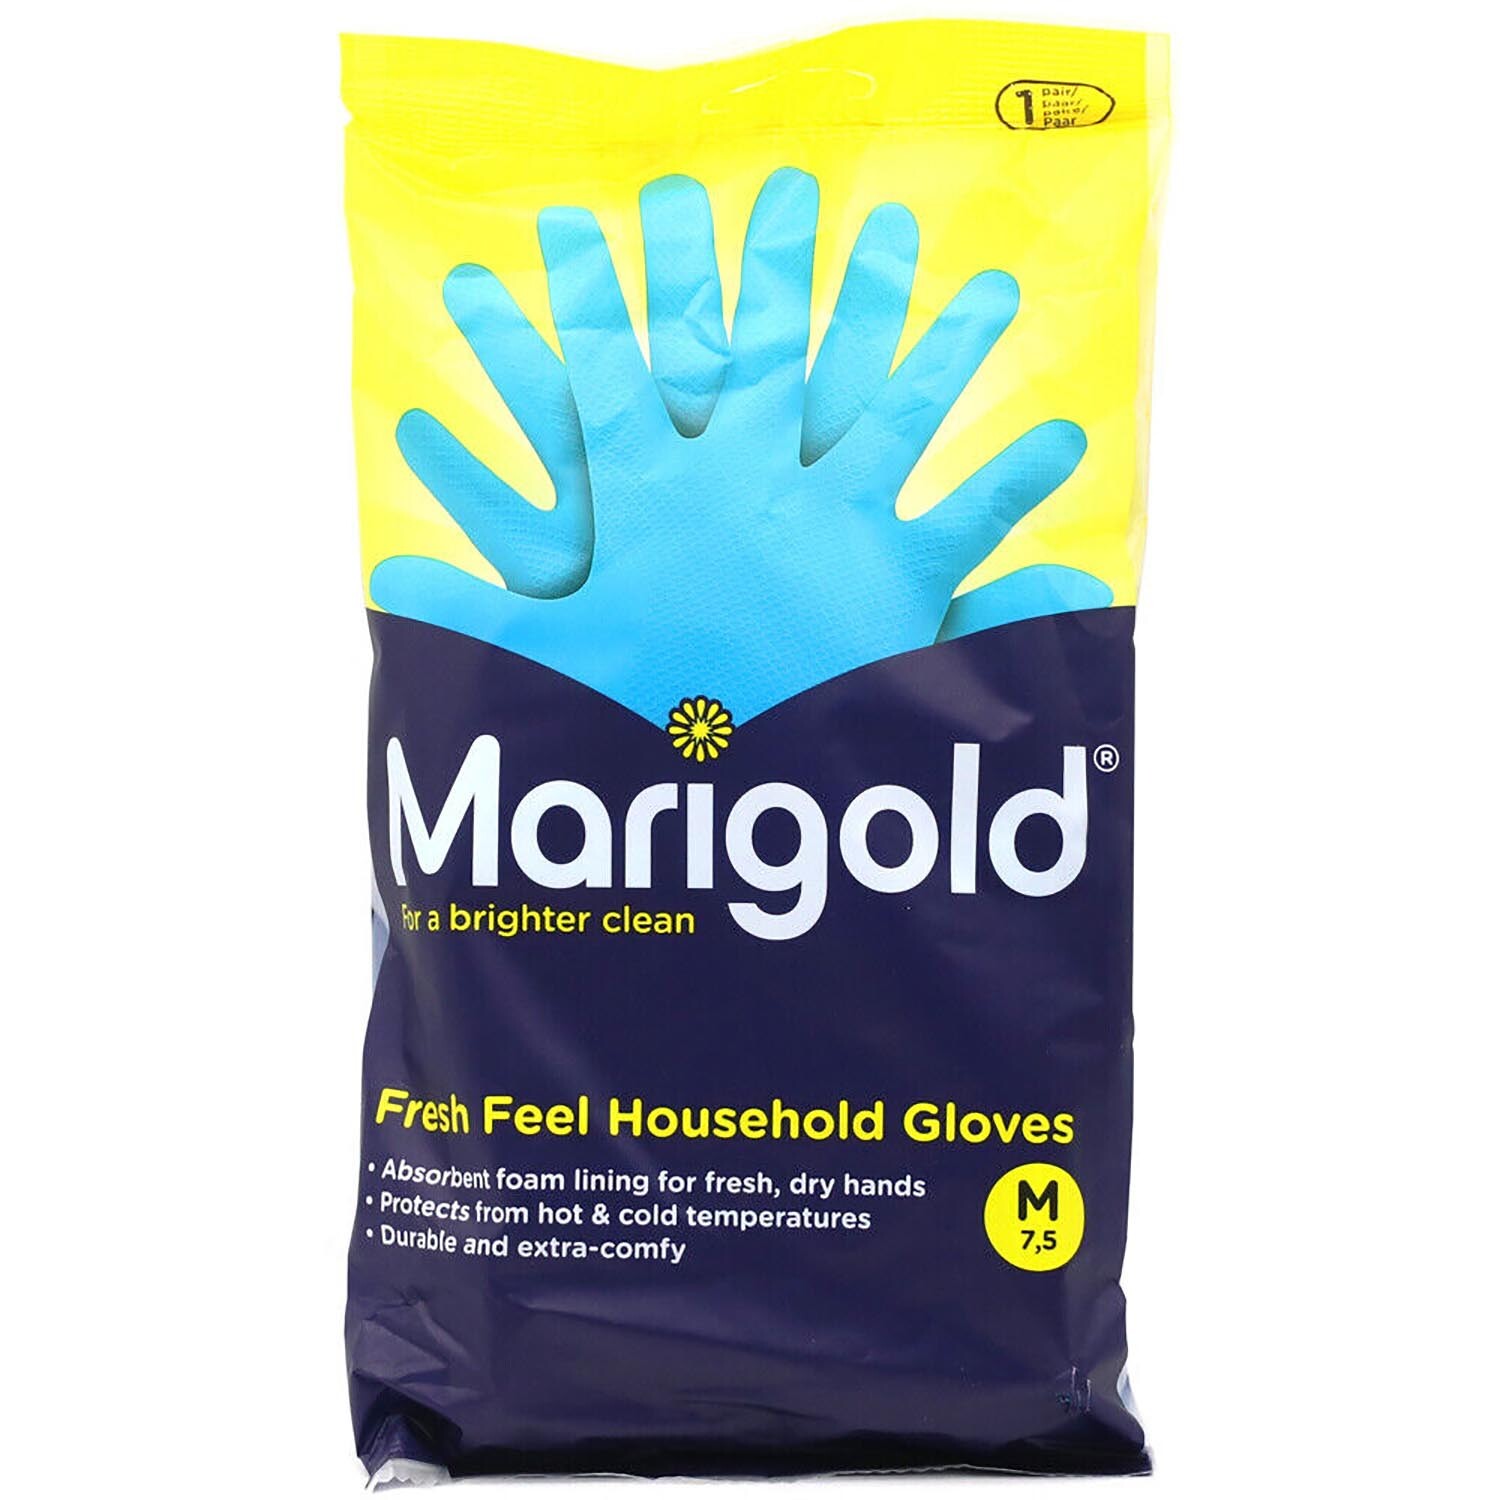 Marigold Fresh Feel Household Gloves - Blue Image 1